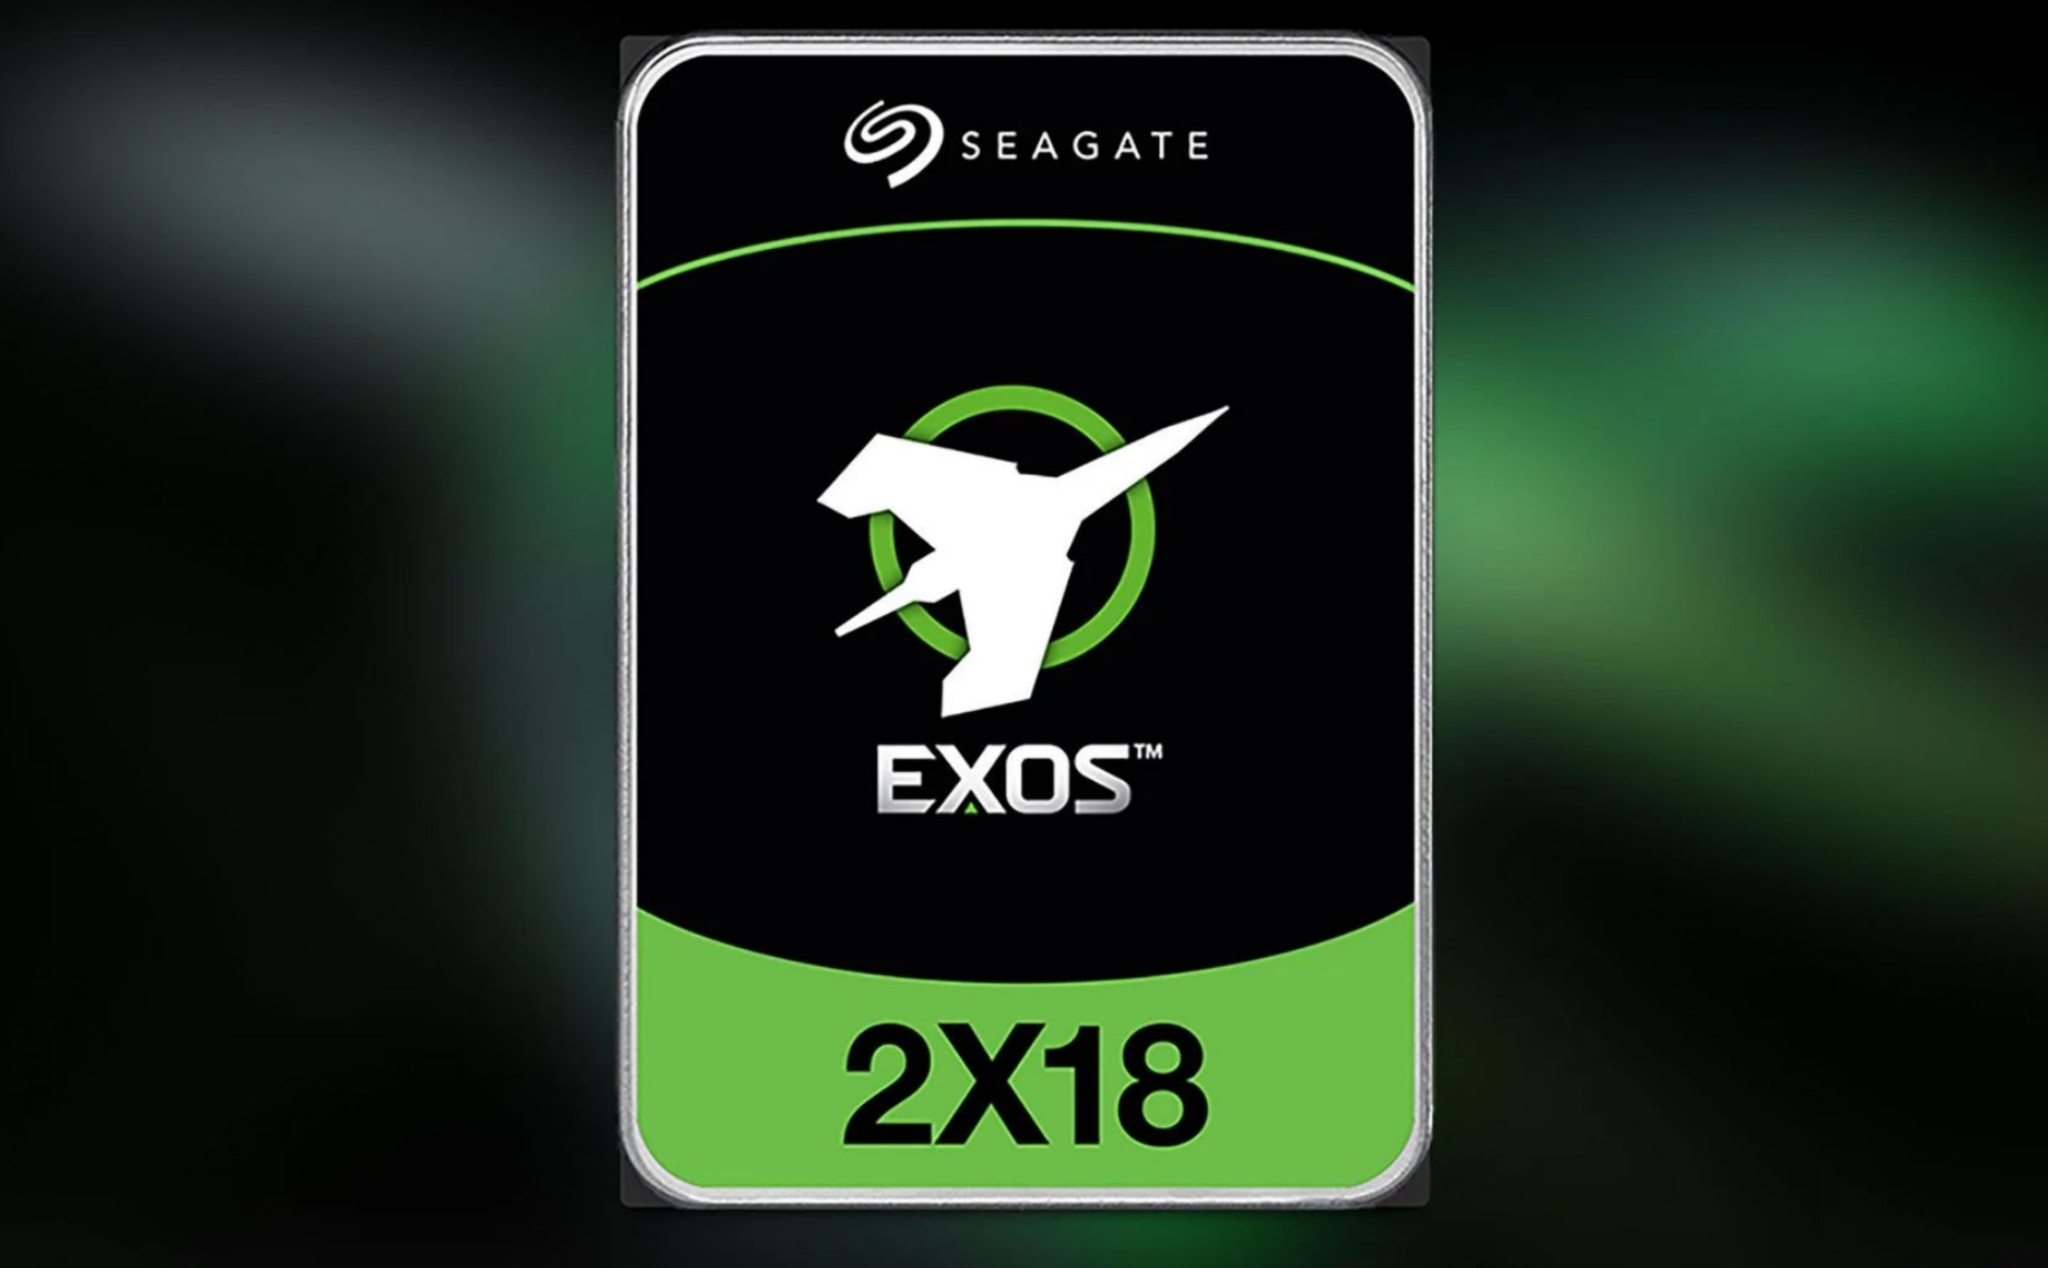 Seagate Exos 2X18 - ổ cứng cơ nhanh nhất thế giới, tốc độ ngang ngửa với SSD 2.5" SATA